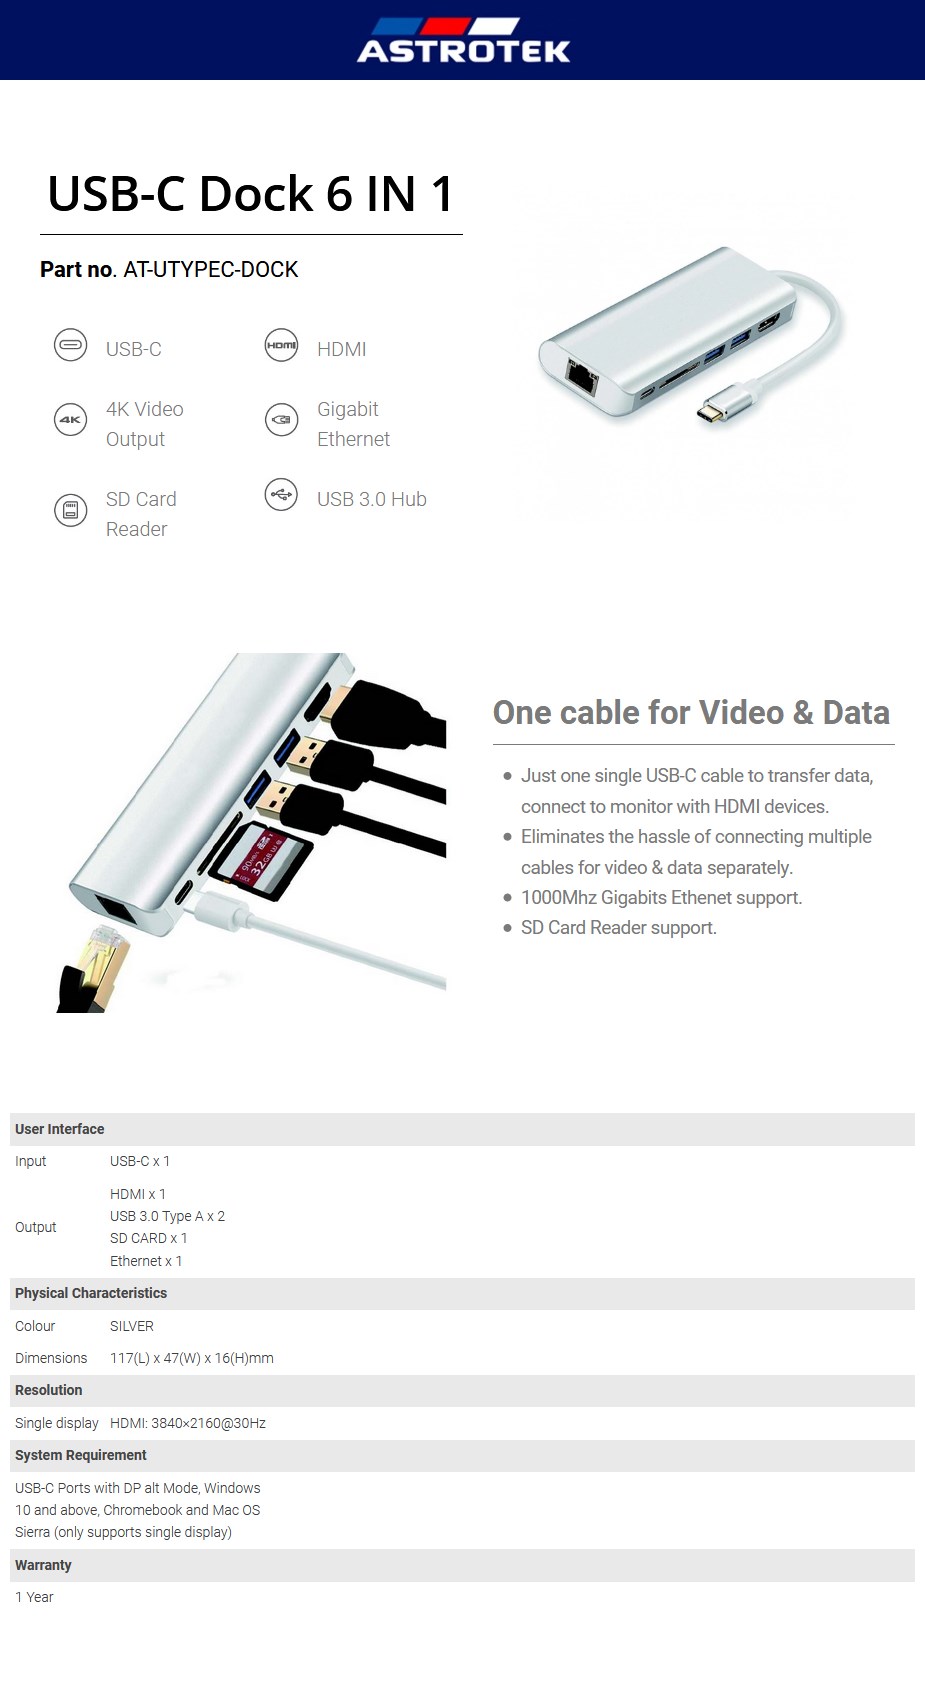 Astrotek AT-UTYPEC-DOCK Thunderbolt USB-C 6-in-1 Dock for MacBook Pro - Overview 1